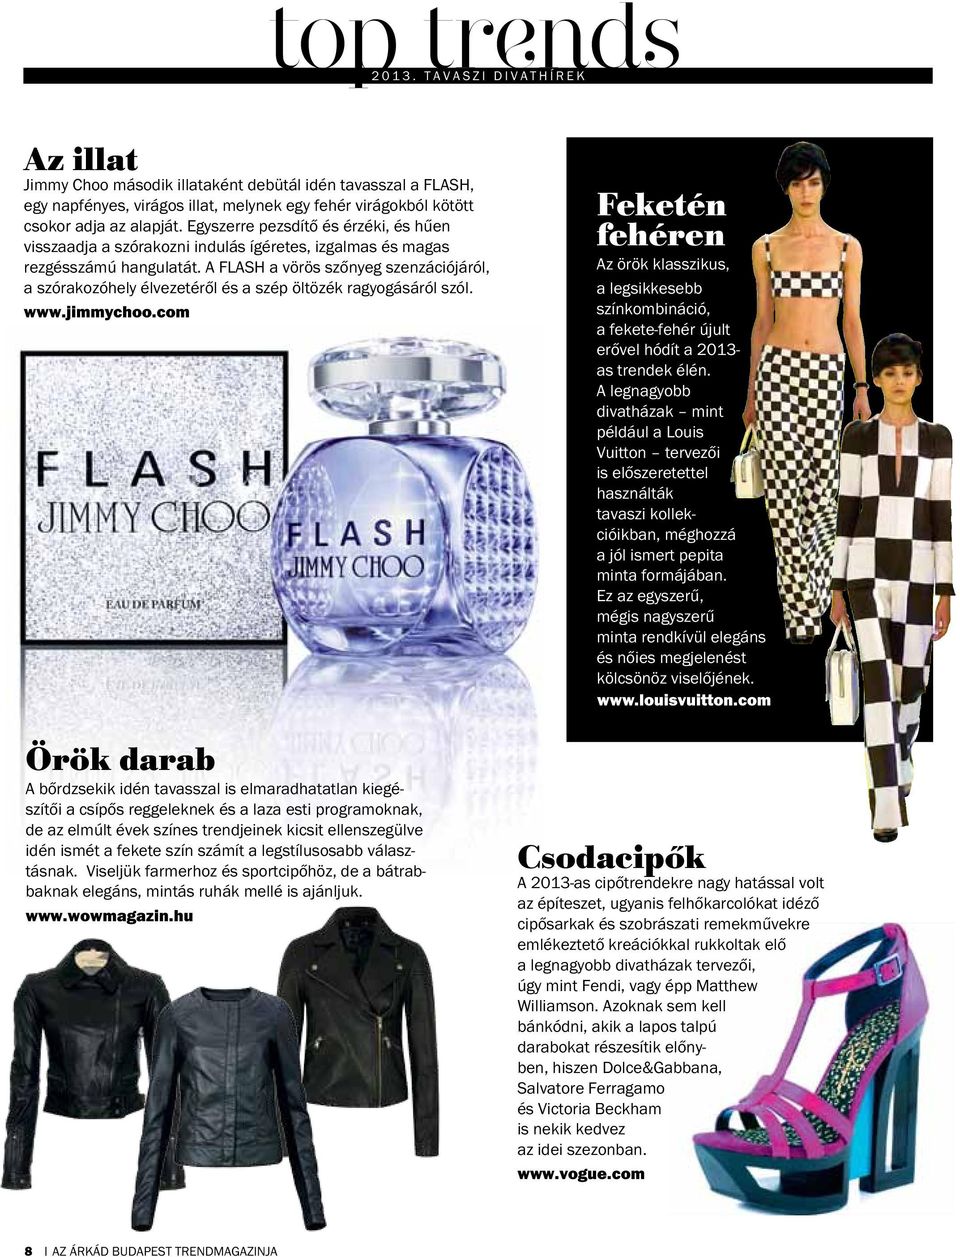 nagy átalakítás Exkluzív Fashion BEAUTY TRENDEK Inspiráló ötletek Divat  egyéniségre szabva az ÁRKÁD Budapest Trendmagazinja - PDF Ingyenes letöltés